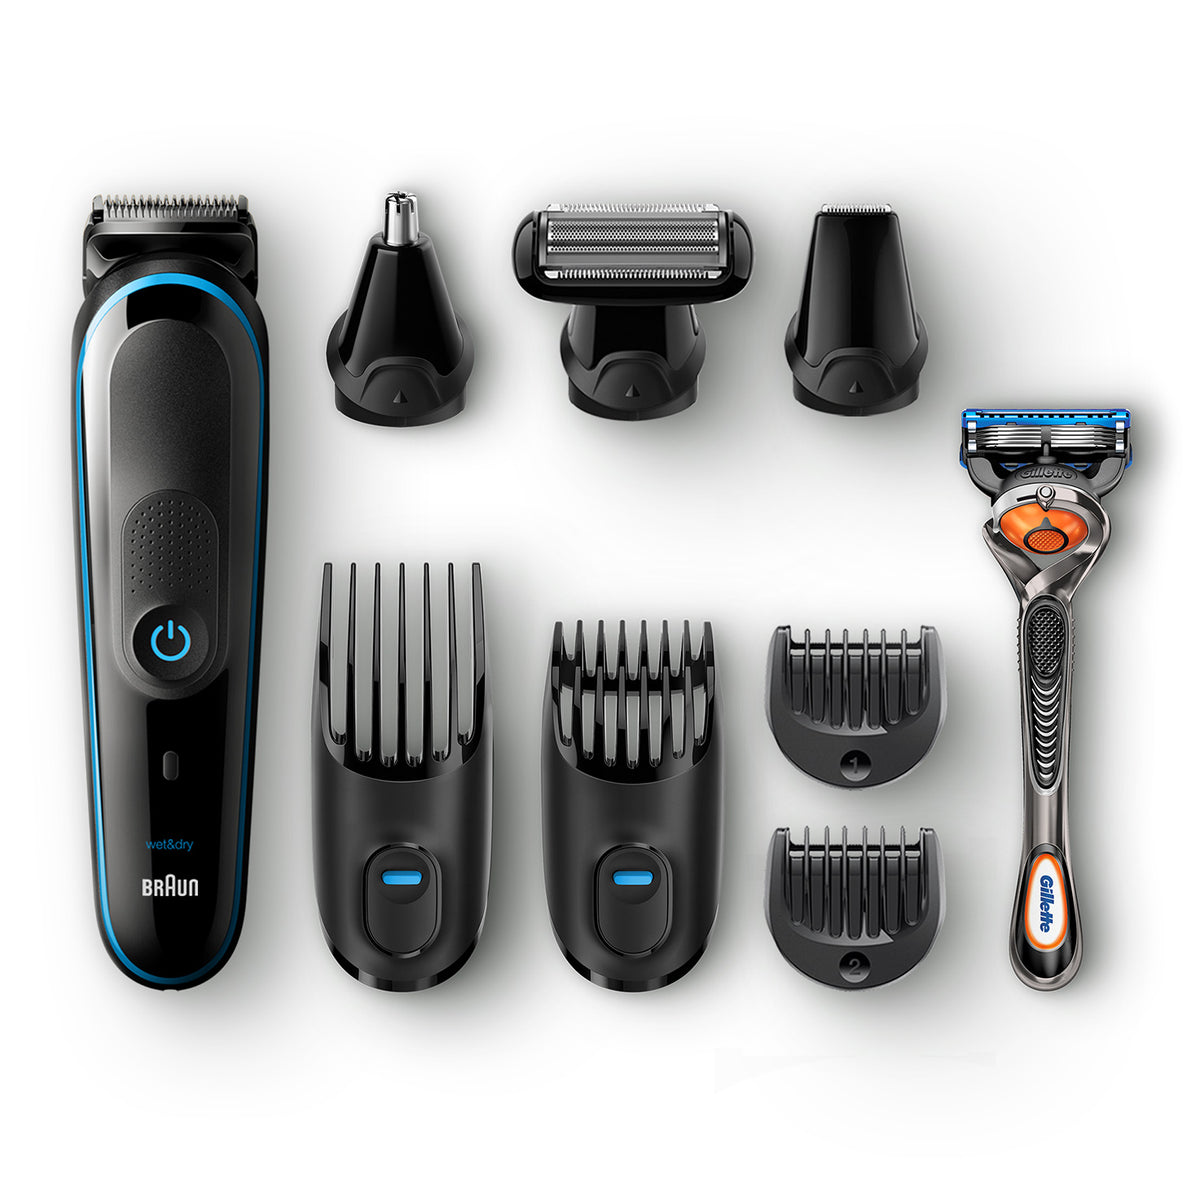 Braun All-in-one trimmer MGK5080, 9-in-1, 7 attachments and Gillette Fusion5 ProGlide razor.